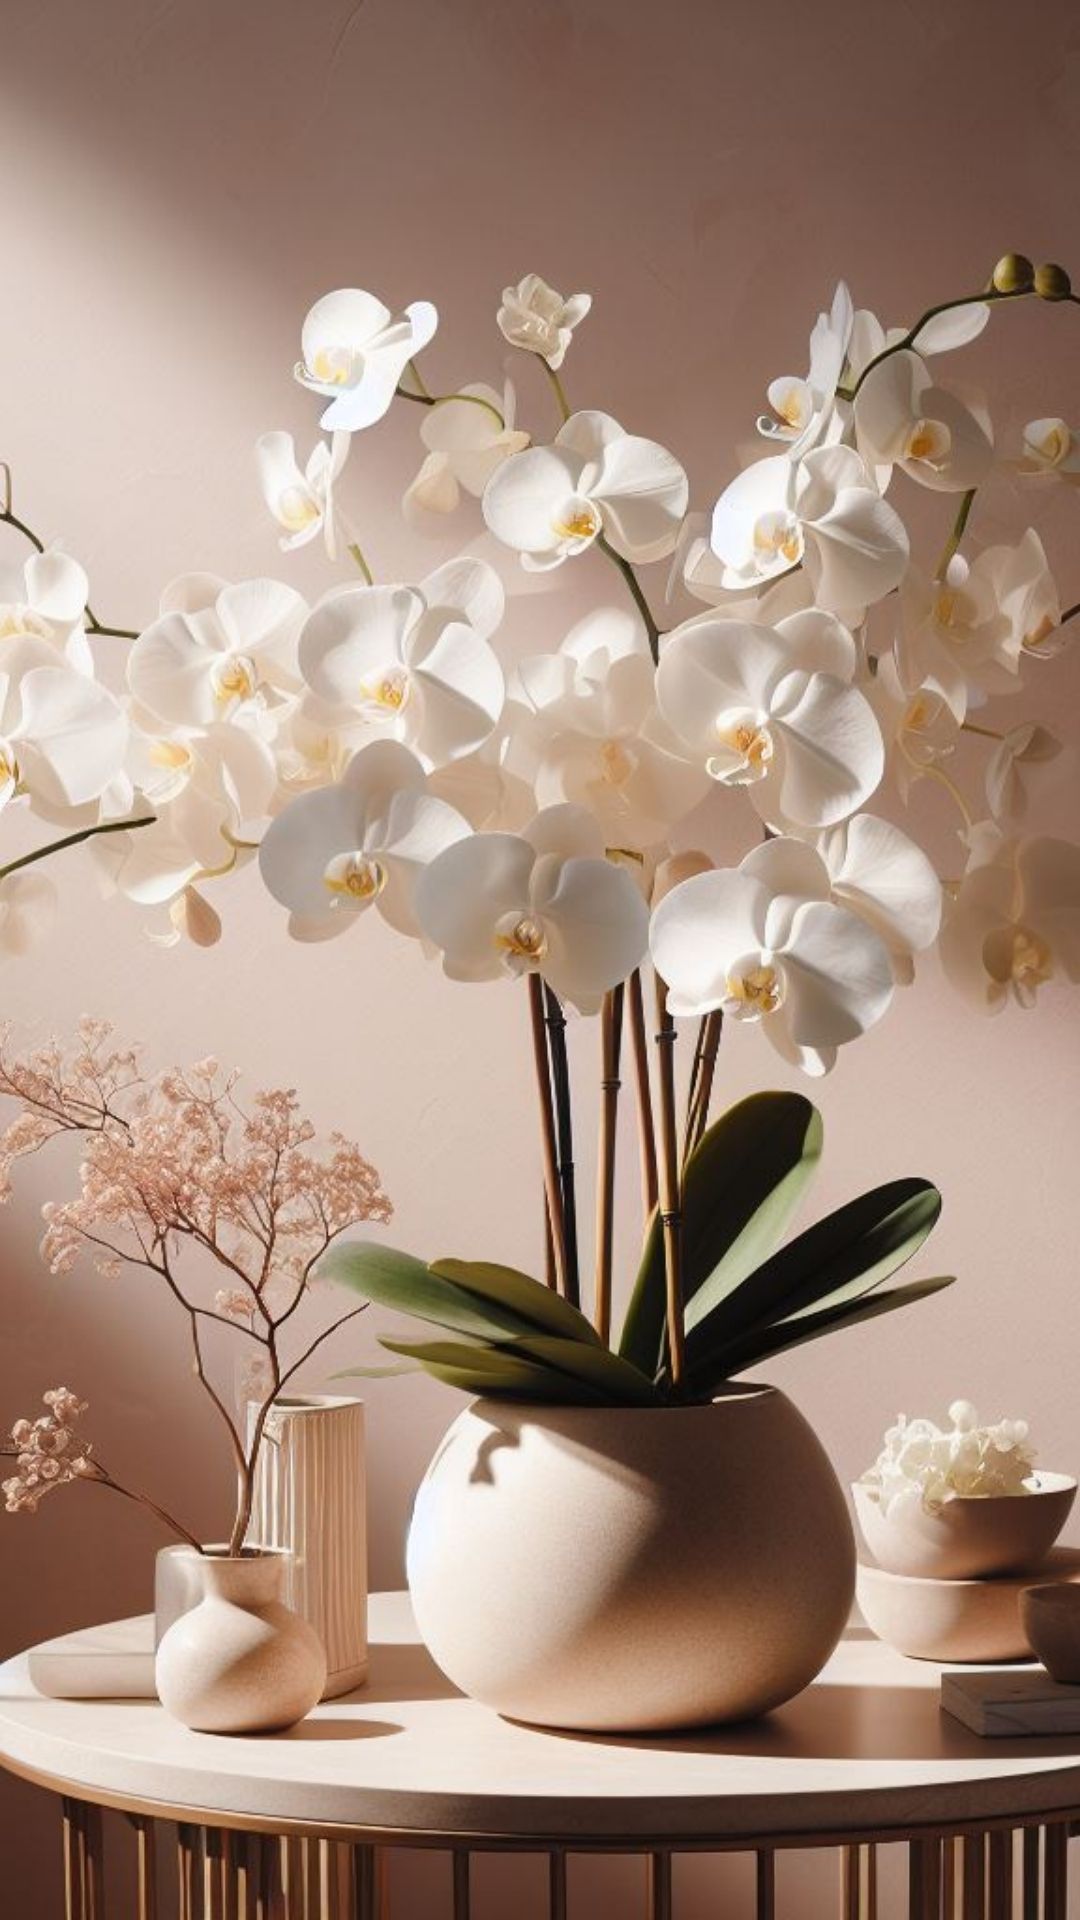 Beleza nas alturas: Orquídeas adornando árvores e coqueiros